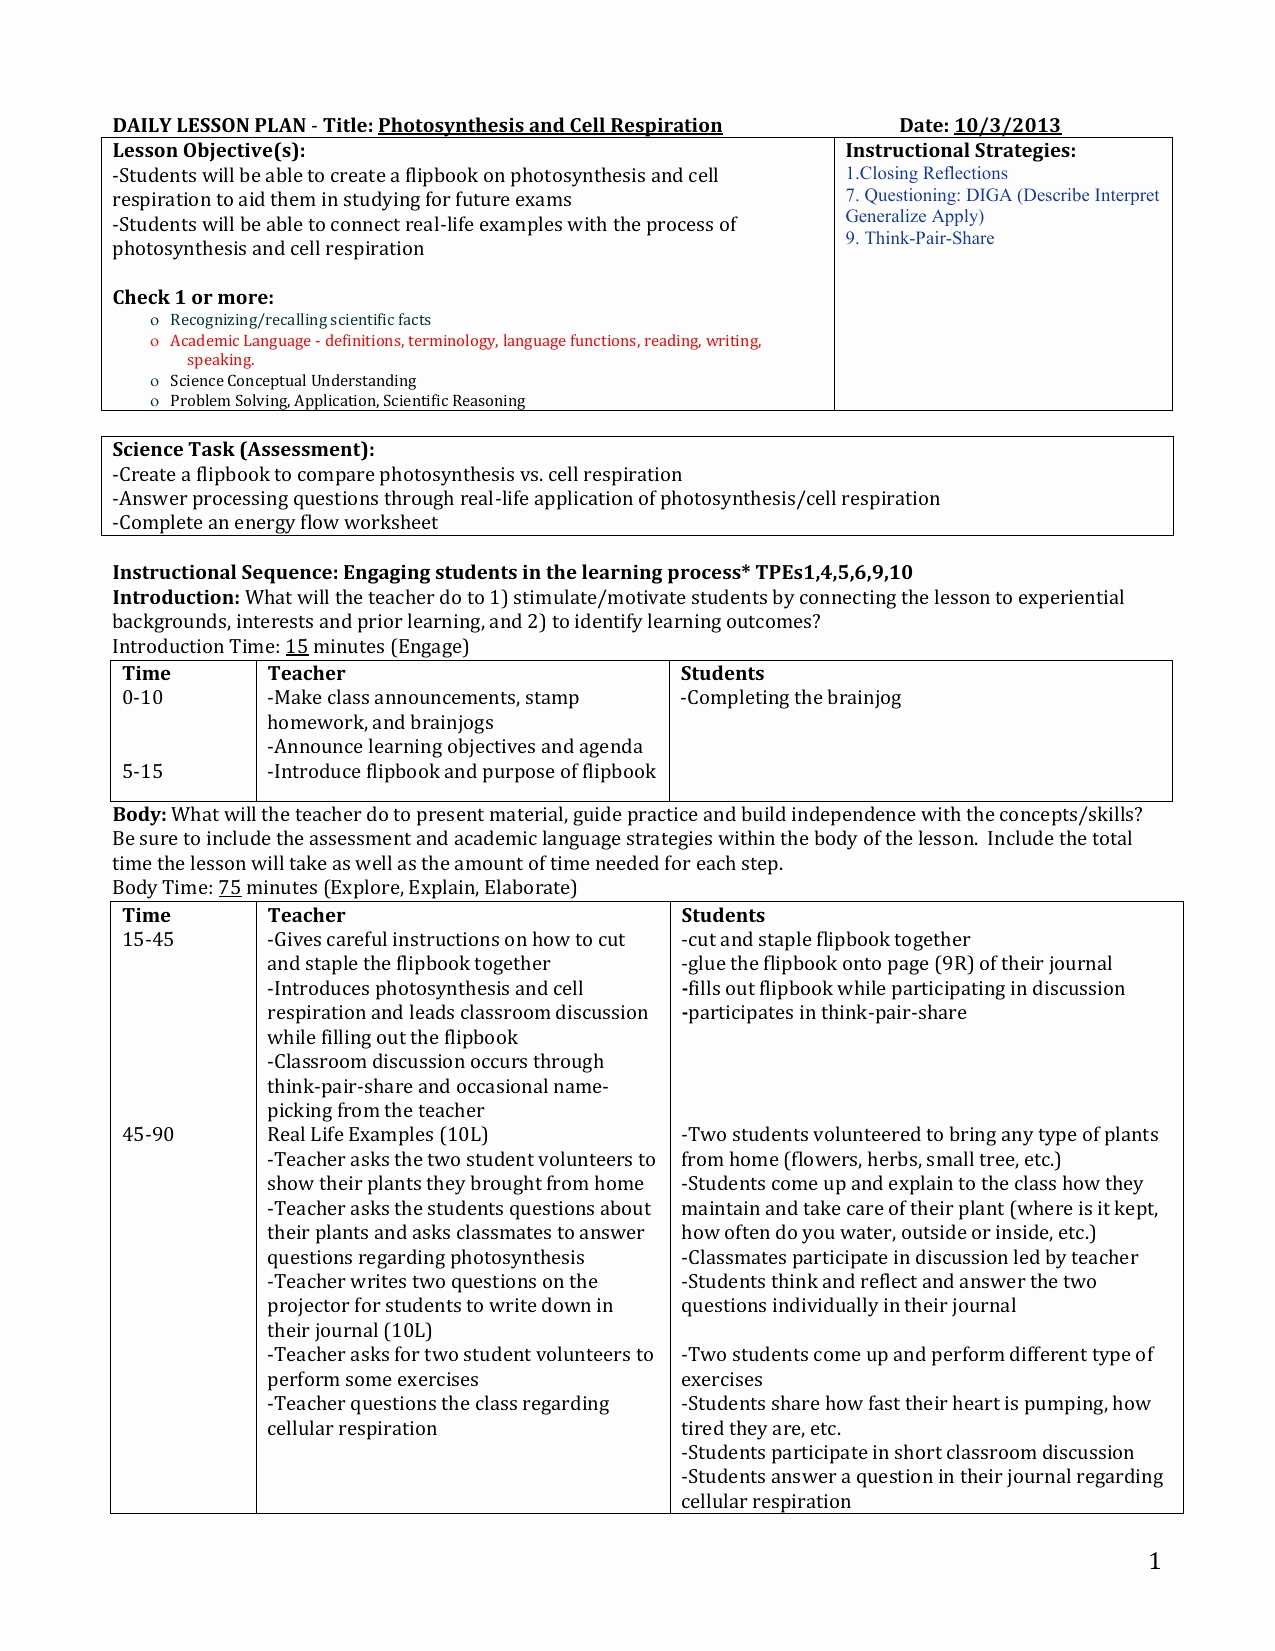 Bill Nye Scientific Method Worksheet or Synthesis Worksheet Answers Biology Kidz Activities